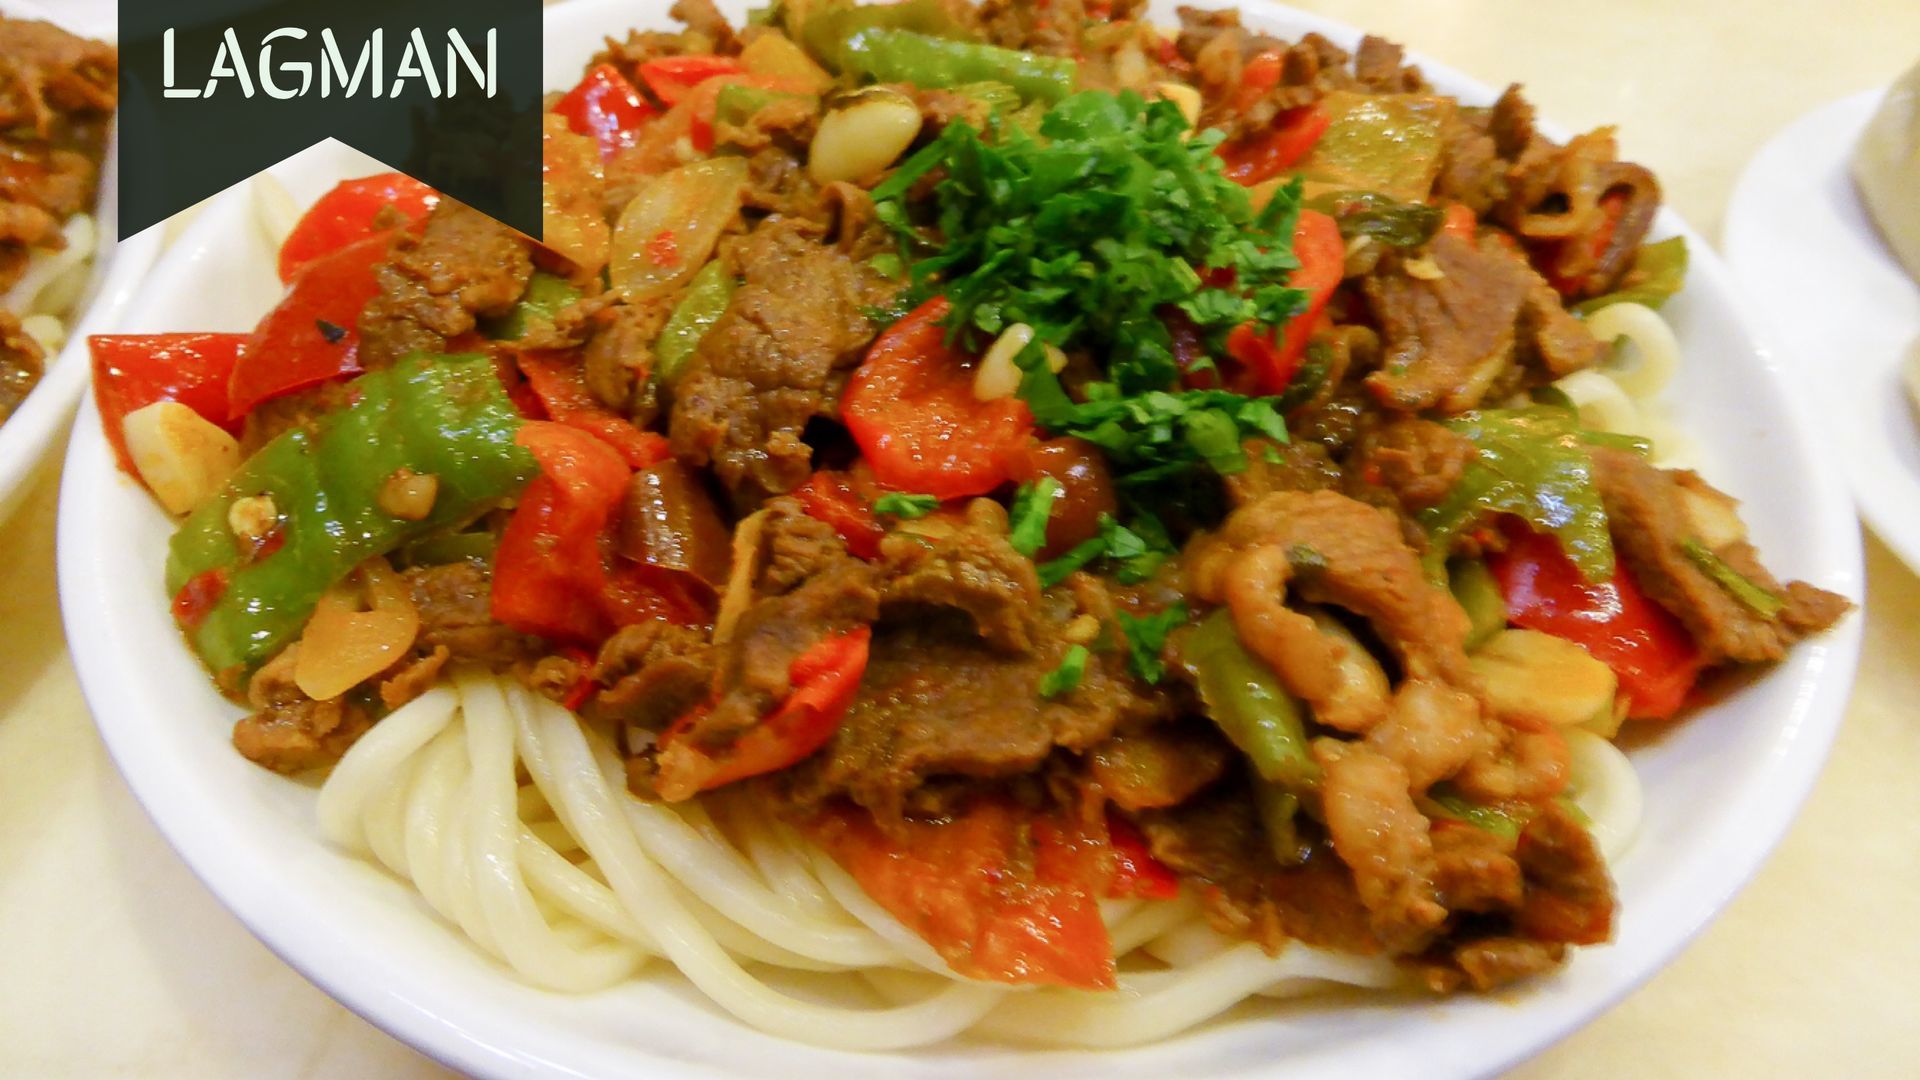 Lagman food & cuisine Central Asia